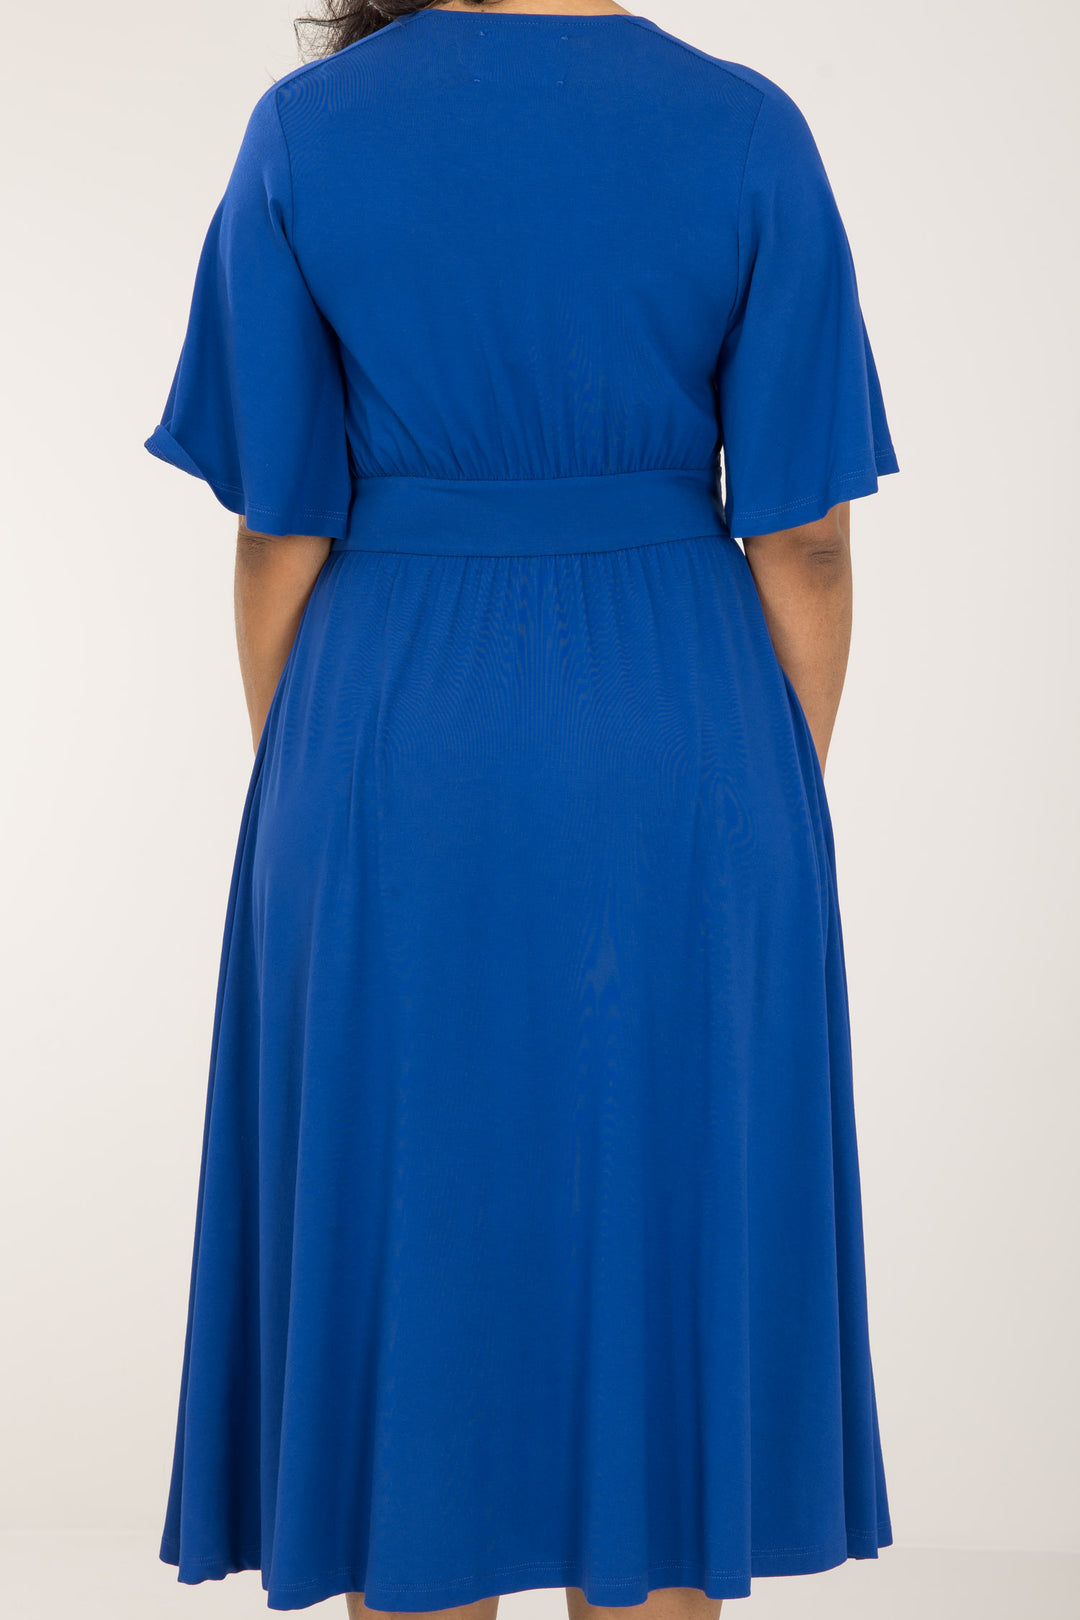 Nina jersey dress - Cobolt Blue - Koboltblå jersey kjole 